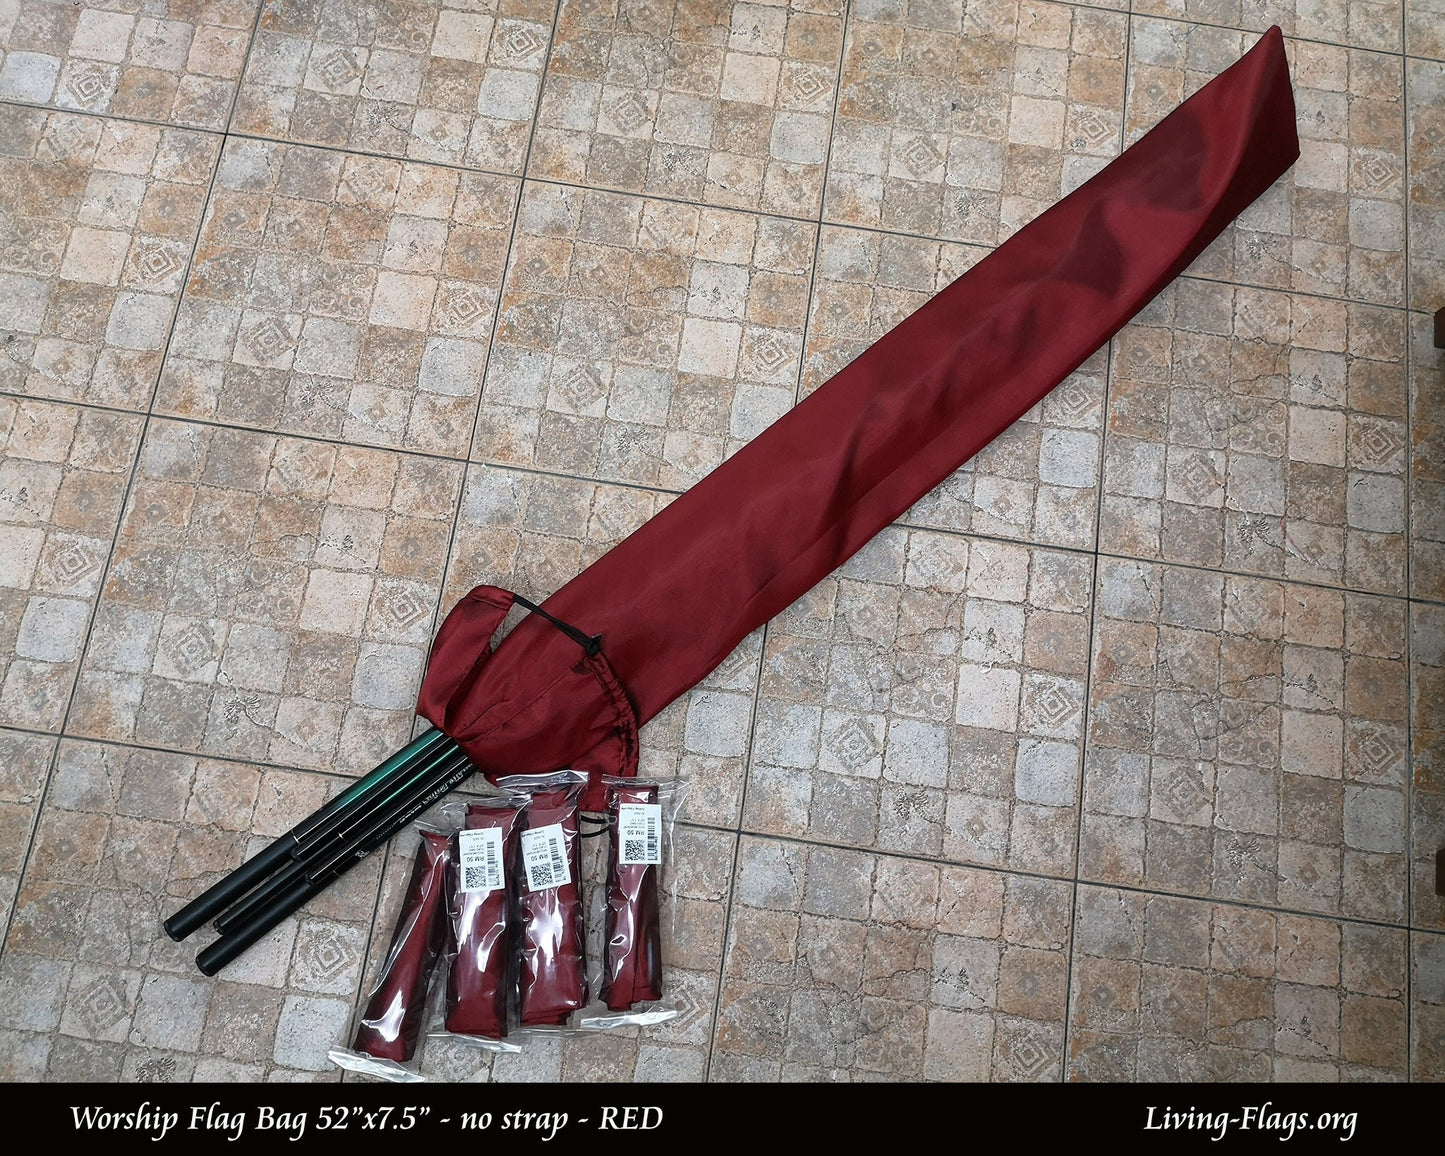 礼拜旗袋 52“x 7.5” - 红色设计 - L 码